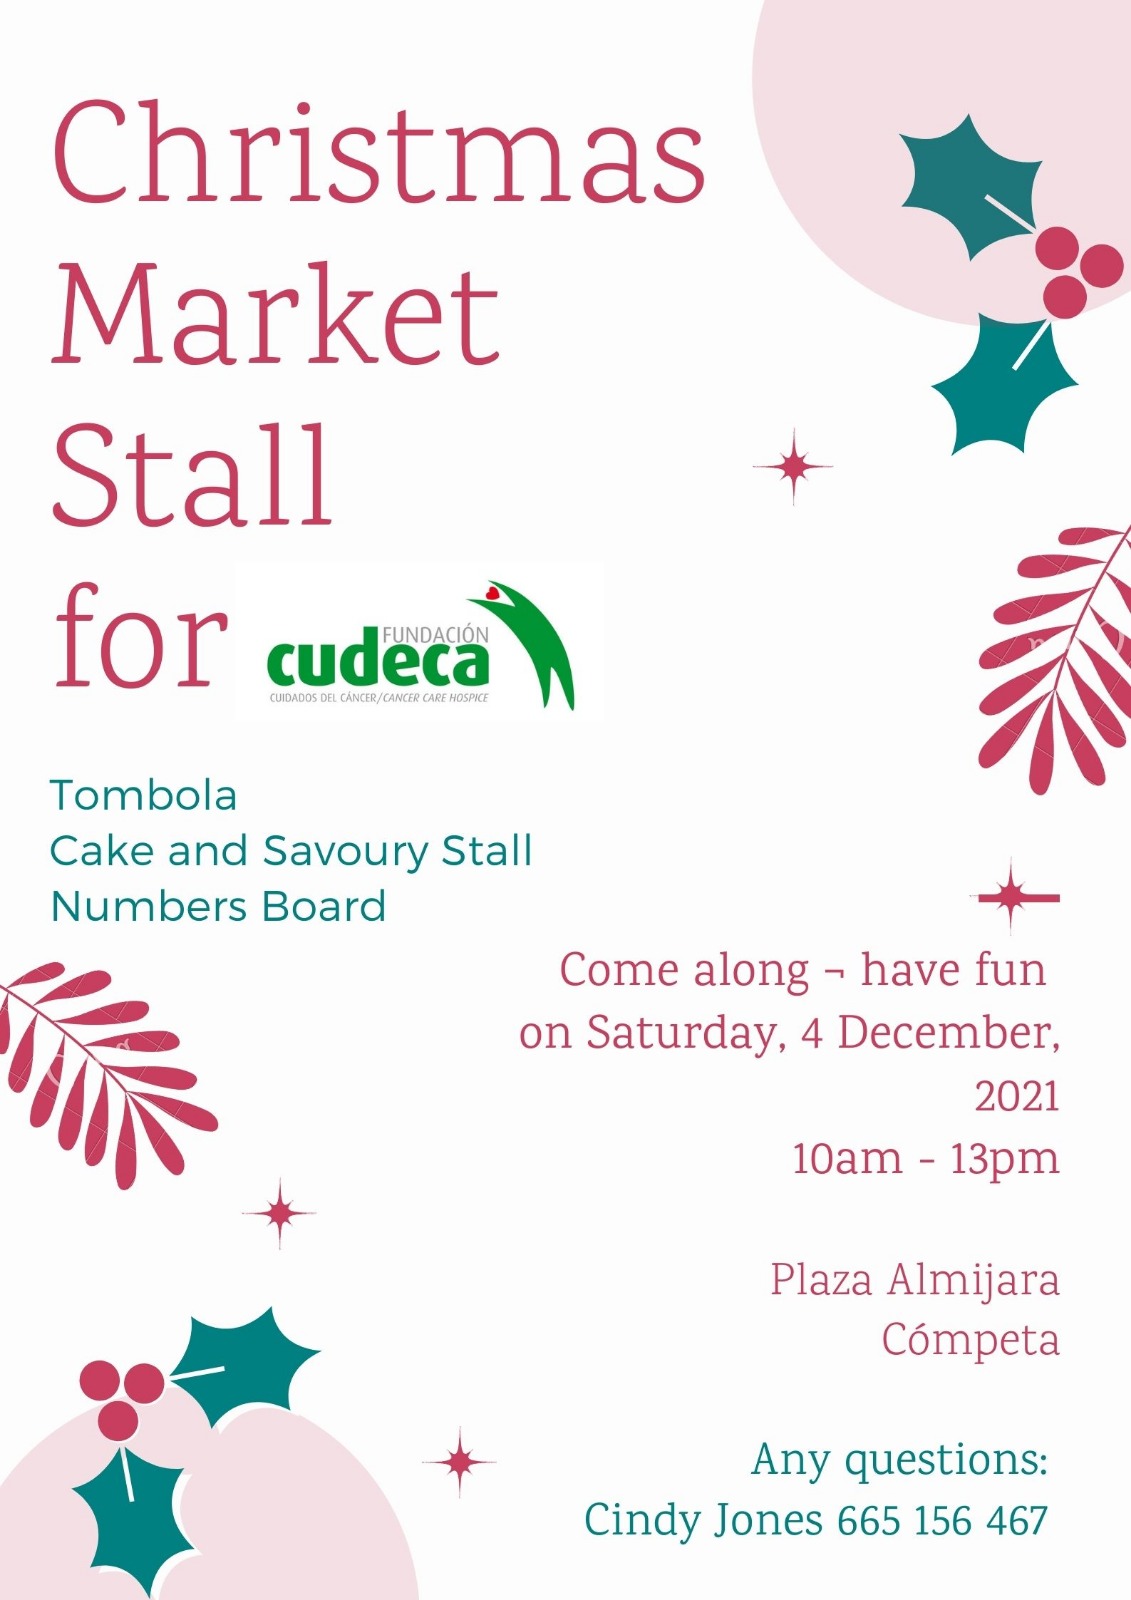 Cómpeta Christmas Markets for Cudeca back again!